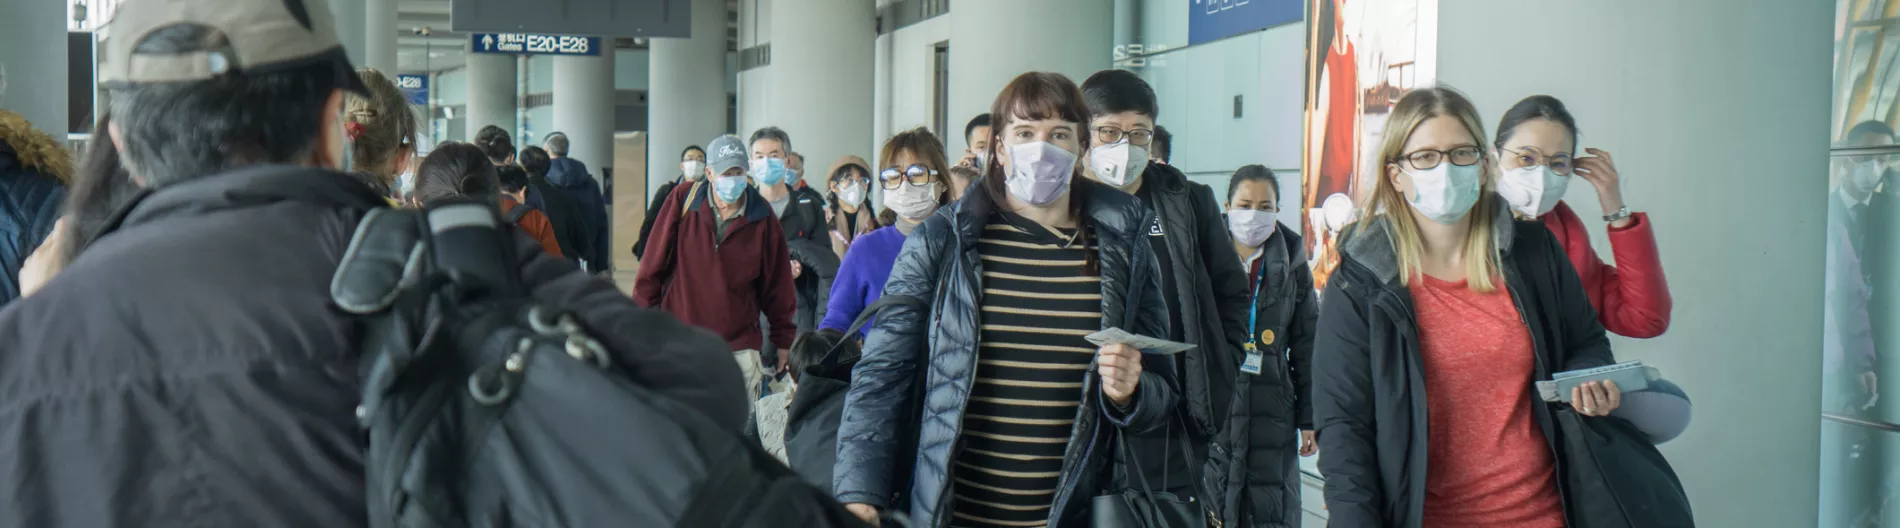 People traveling wearing masks